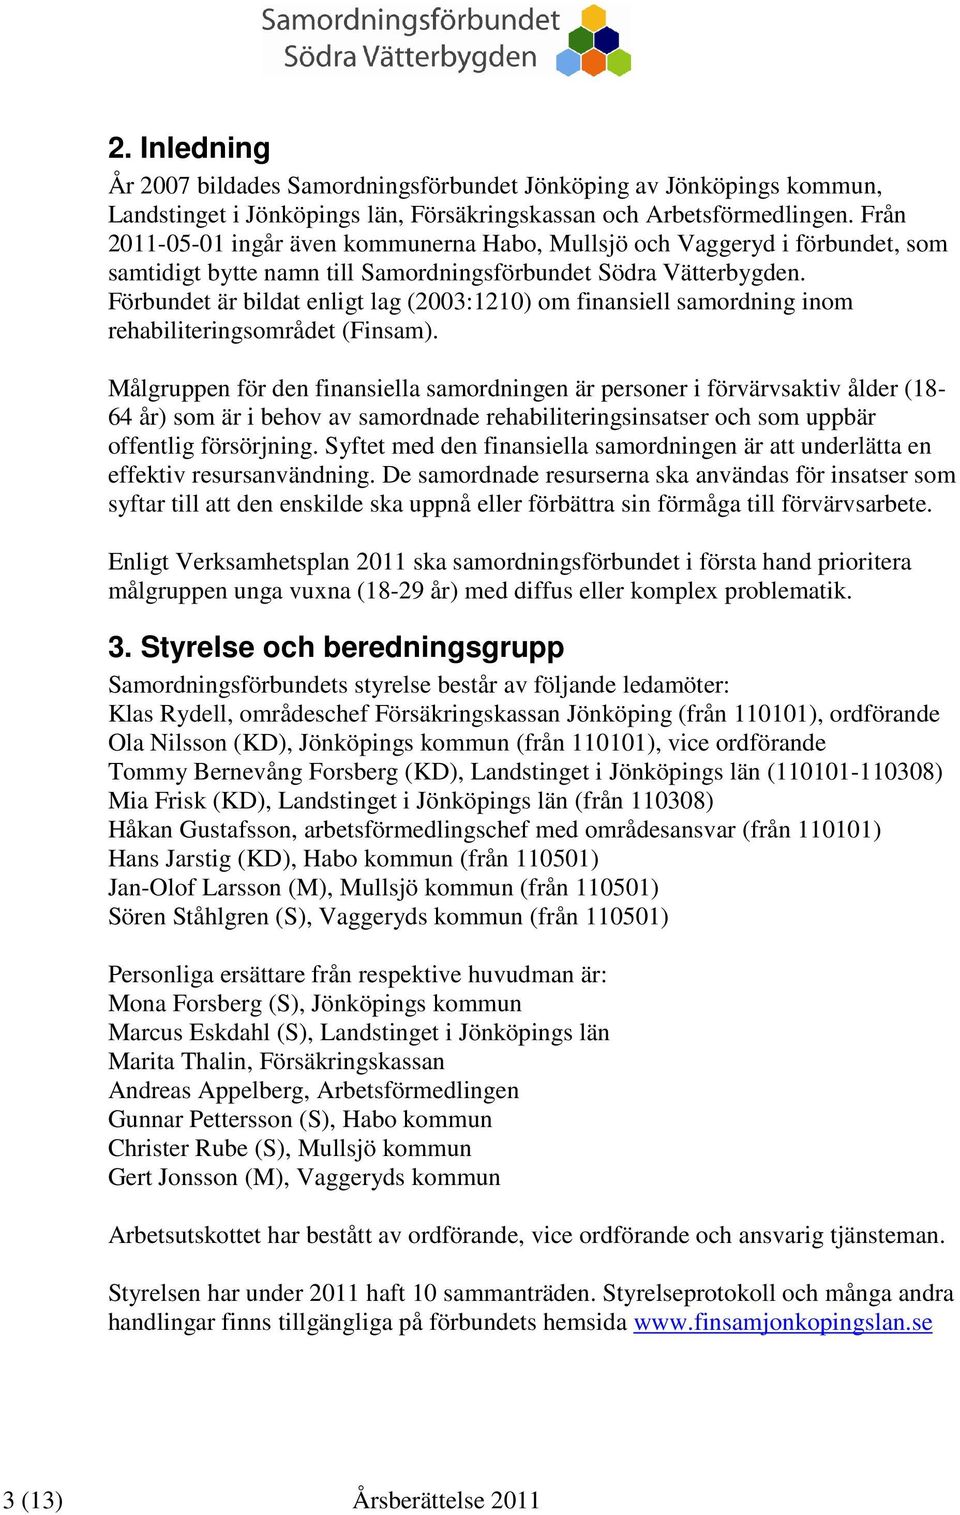 Förbundet är bildat enligt lag (2003:1210) om finansiell samordning inom rehabiliteringsområdet (Finsam).